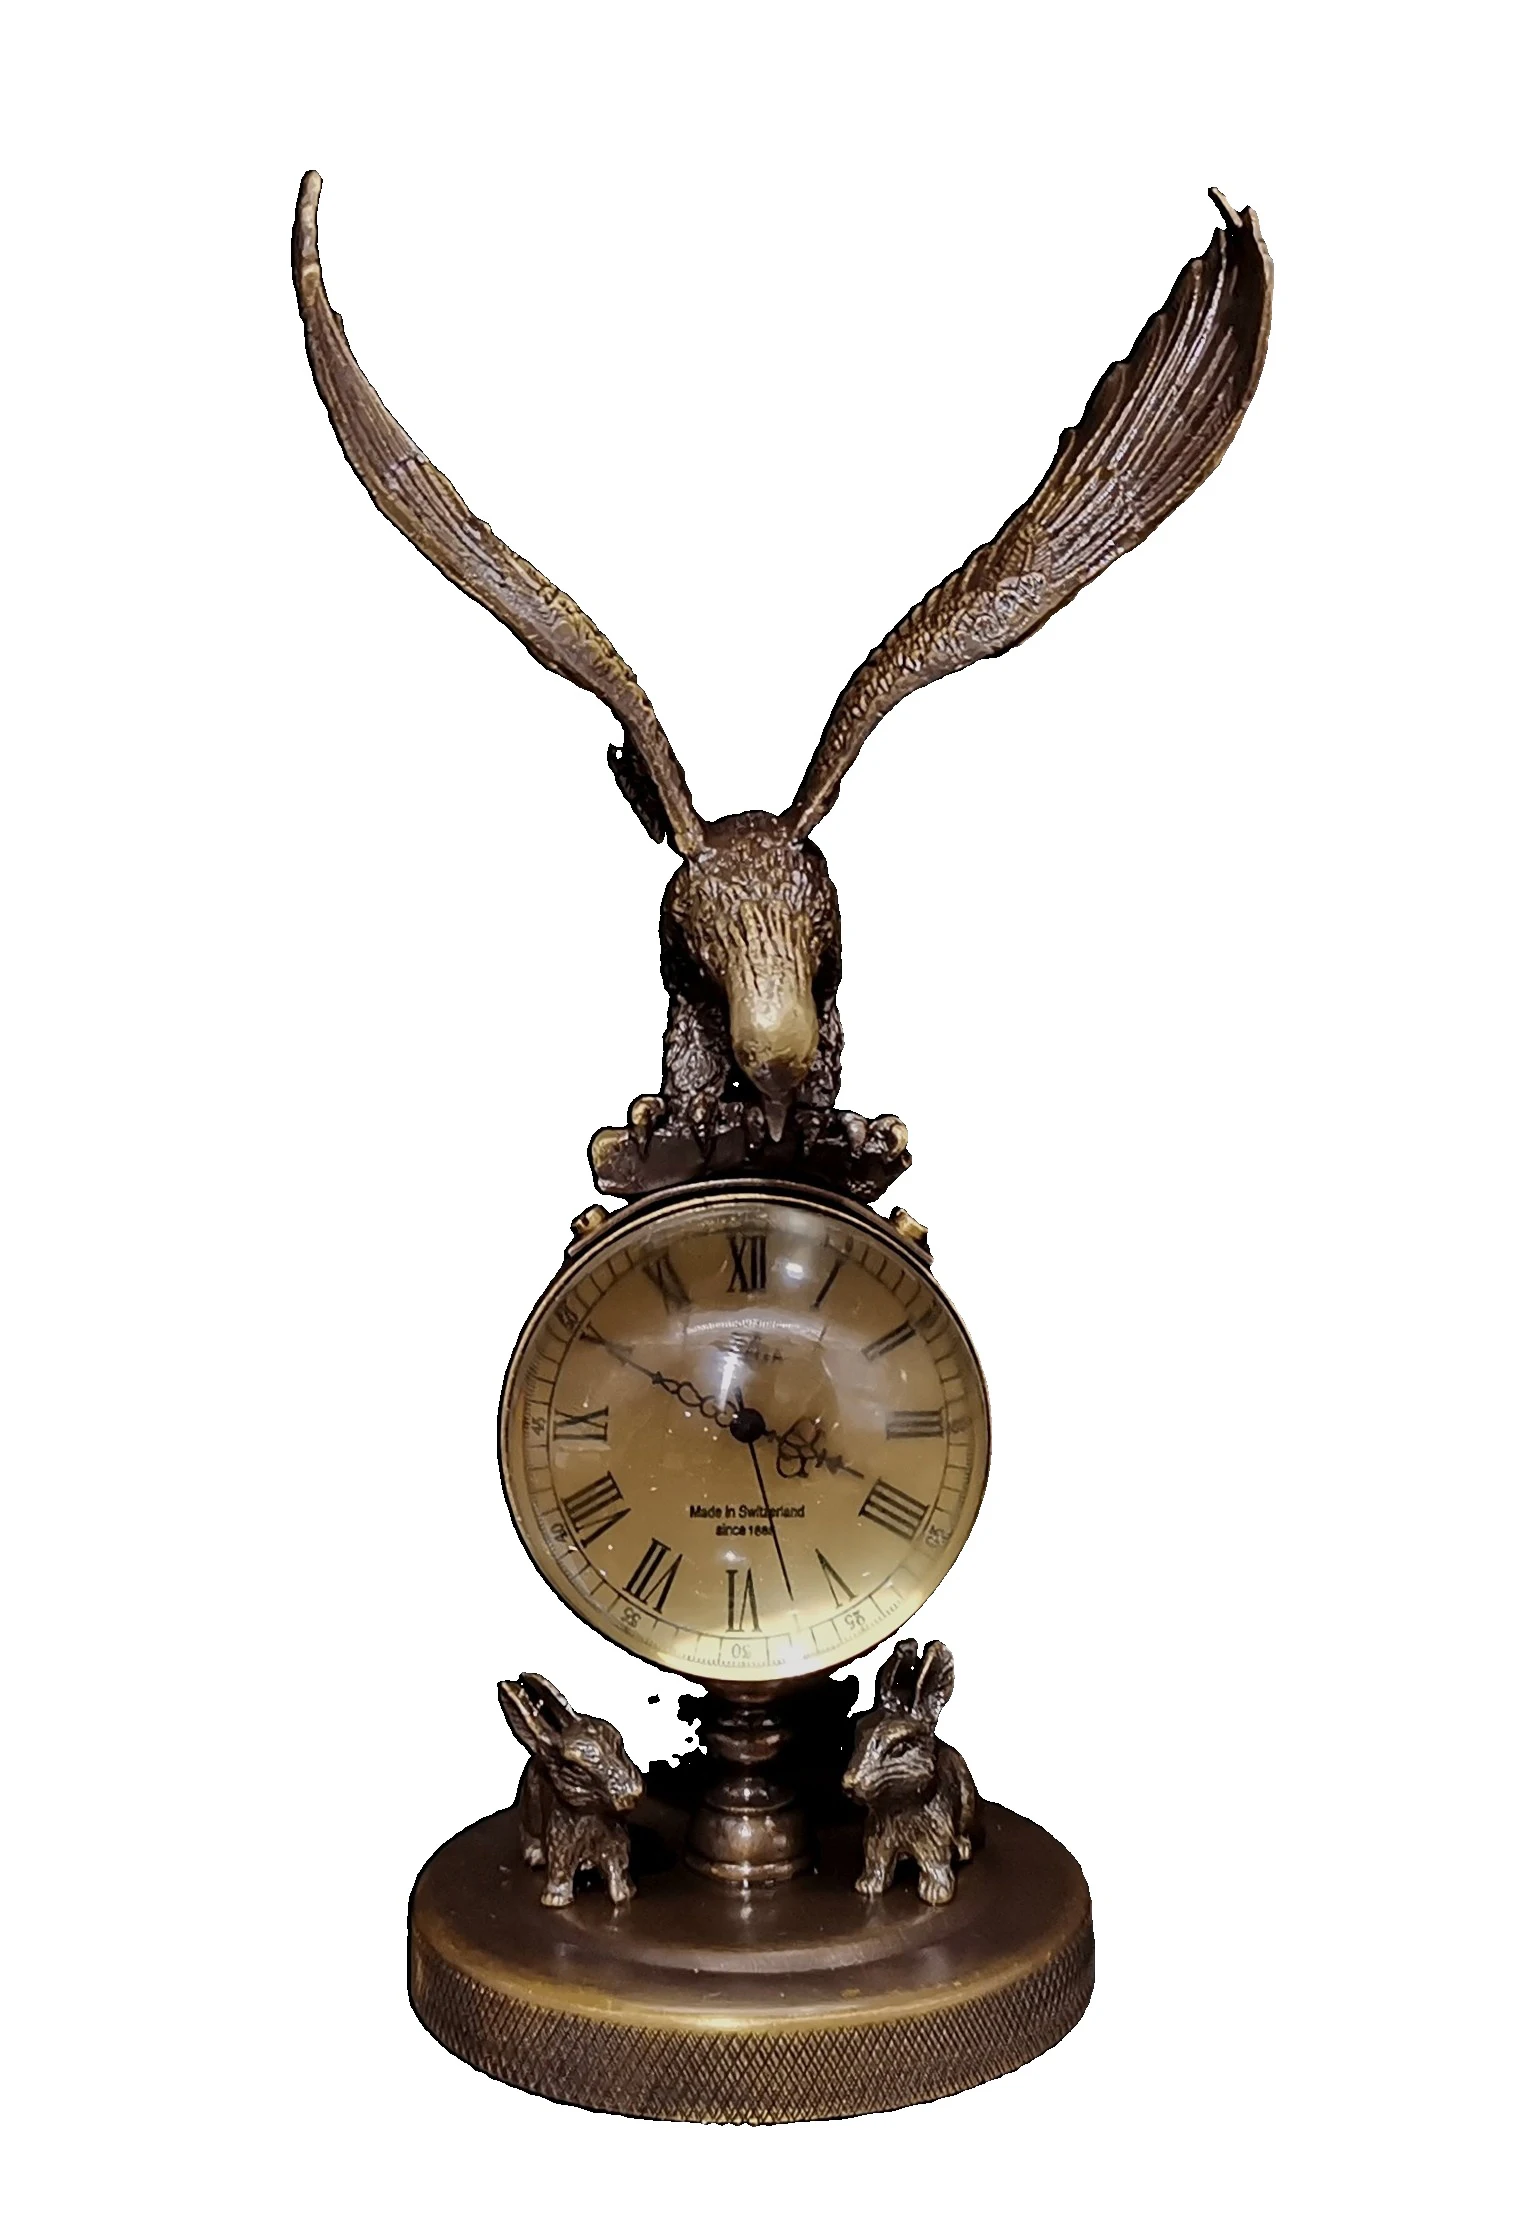 

LAOJUNLU The Eagle часы кролик может использоваться обычно 22 см высотой, традиционный китайский стиль, антиквариат, изобразительное искусство, пода...